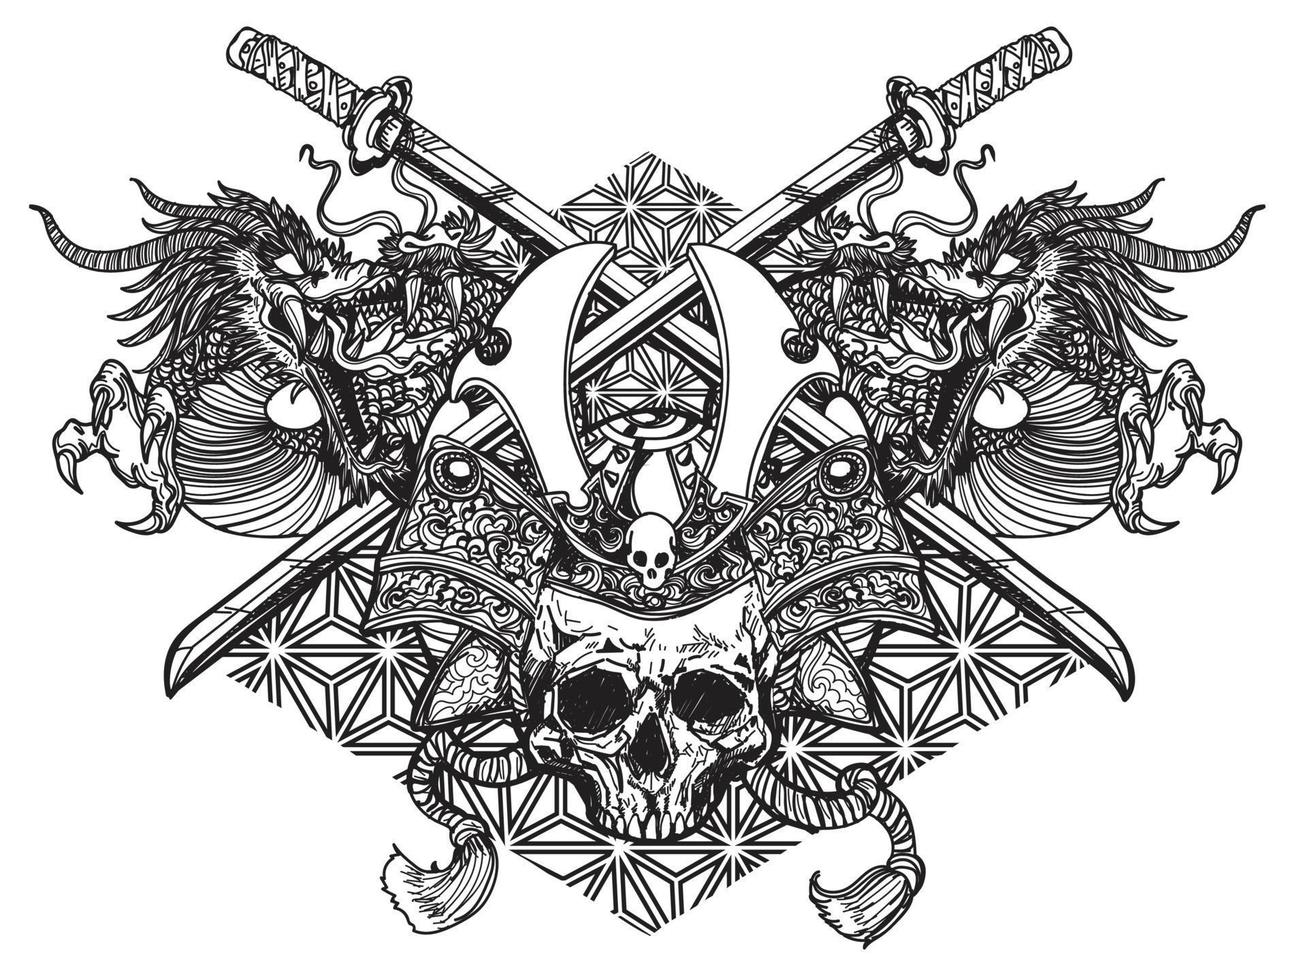 arte del tatuaggio testa di guerriero spada giapponese e drago disegno letteratura disegno a mano schizzo vettore